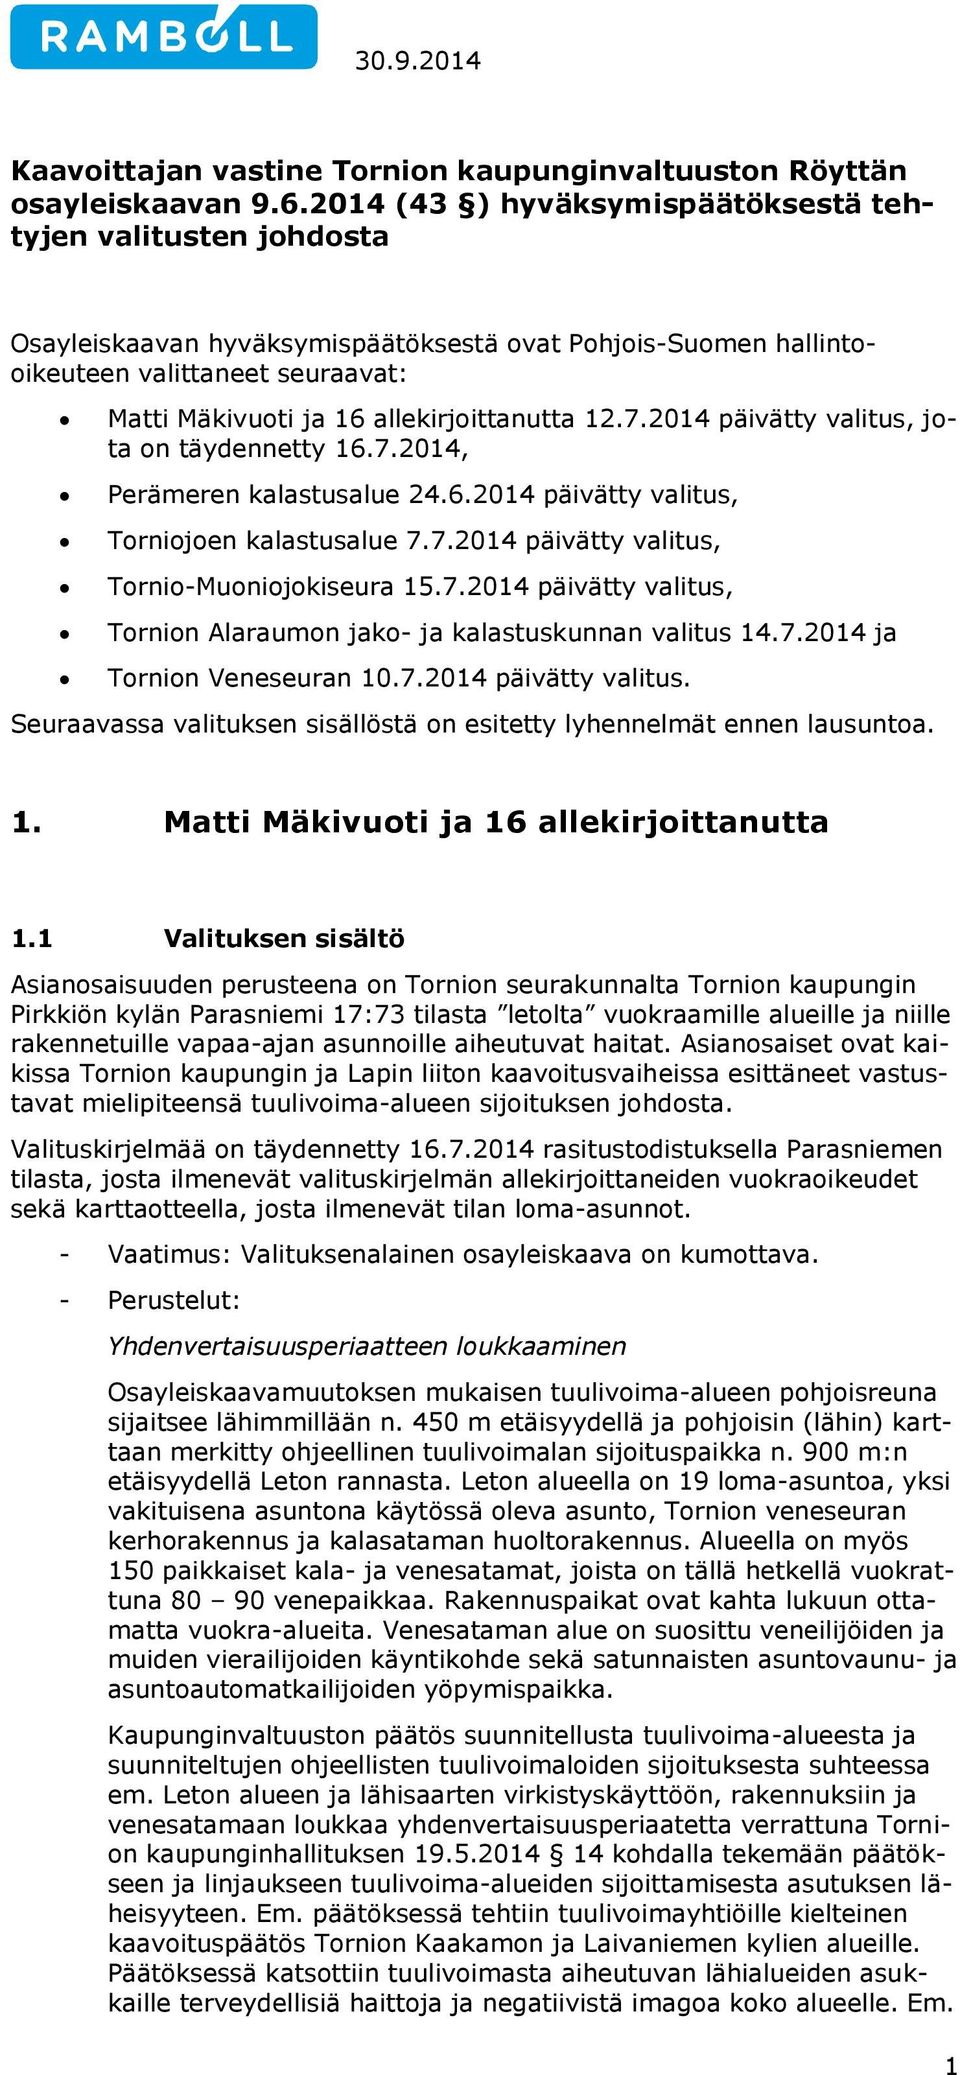 allekirjoittanutta 12.7.2014 päivätty valitus, jota on täydennetty 16.7.2014, Perämeren kalastusalue 24.6.2014 päivätty valitus, Torniojoen kalastusalue 7.7.2014 päivätty valitus, Tornio-Muoniojokiseura 15.